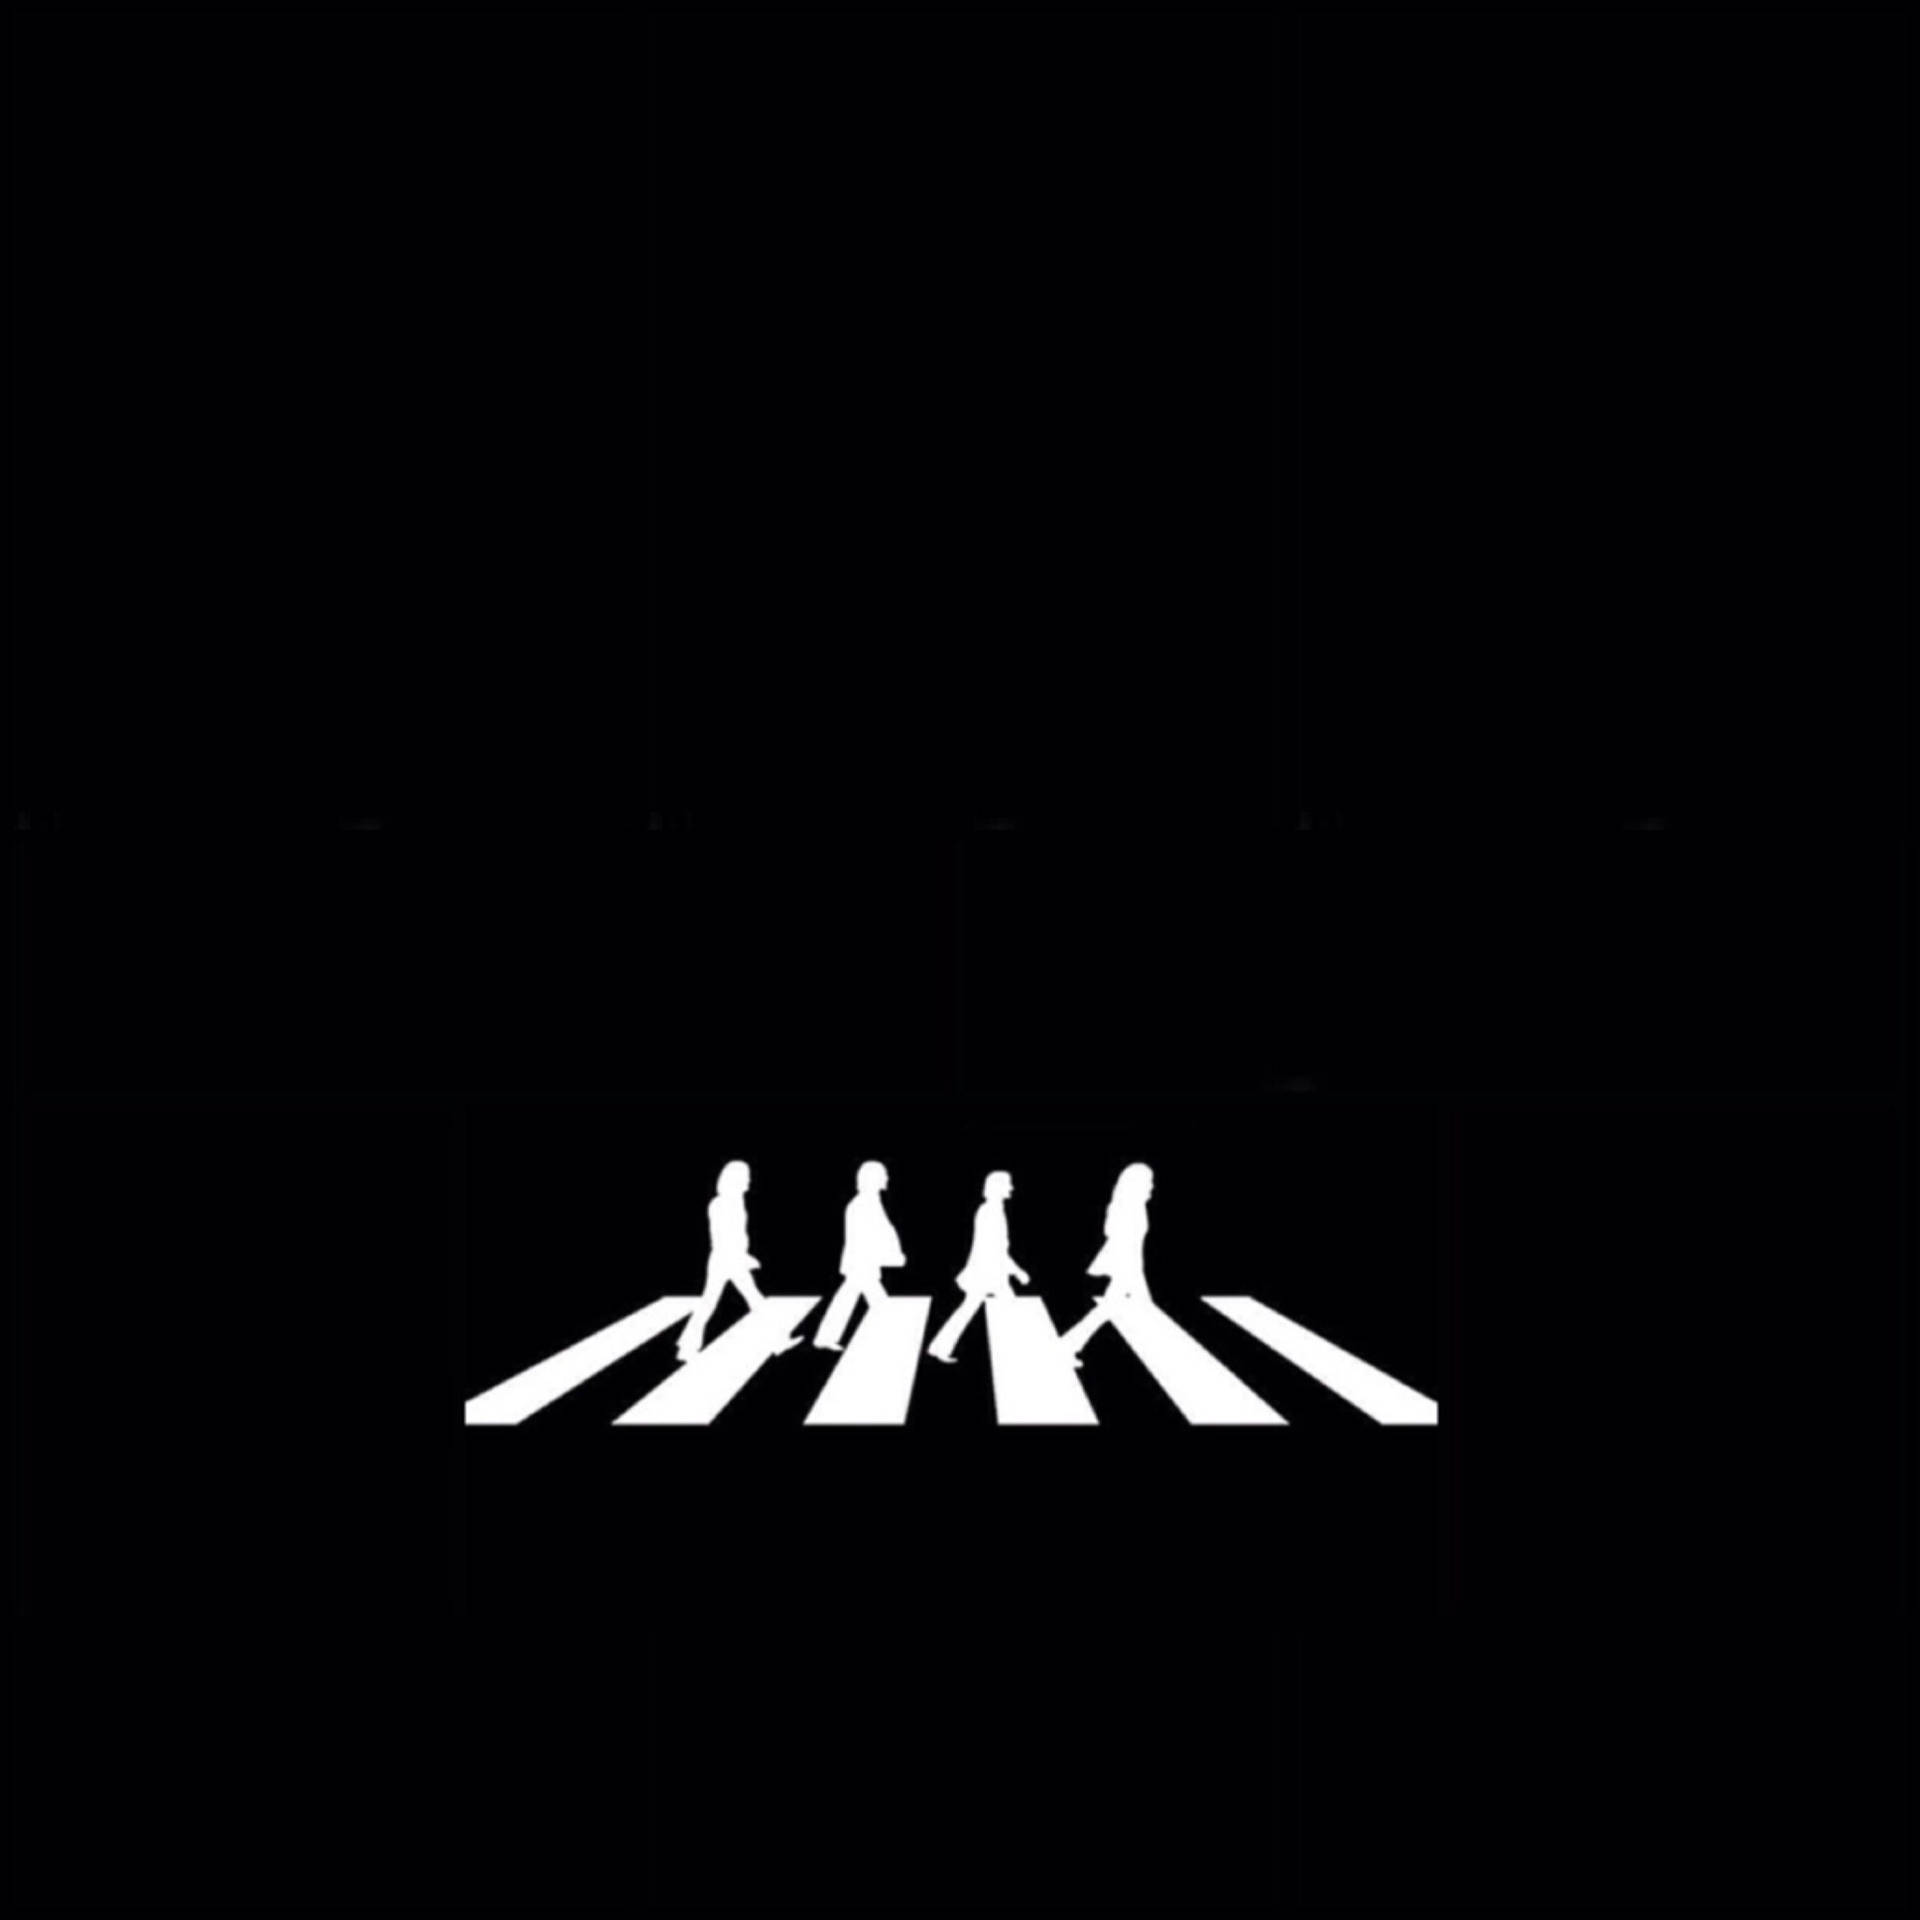 Beatles Minimalist Abbey Road